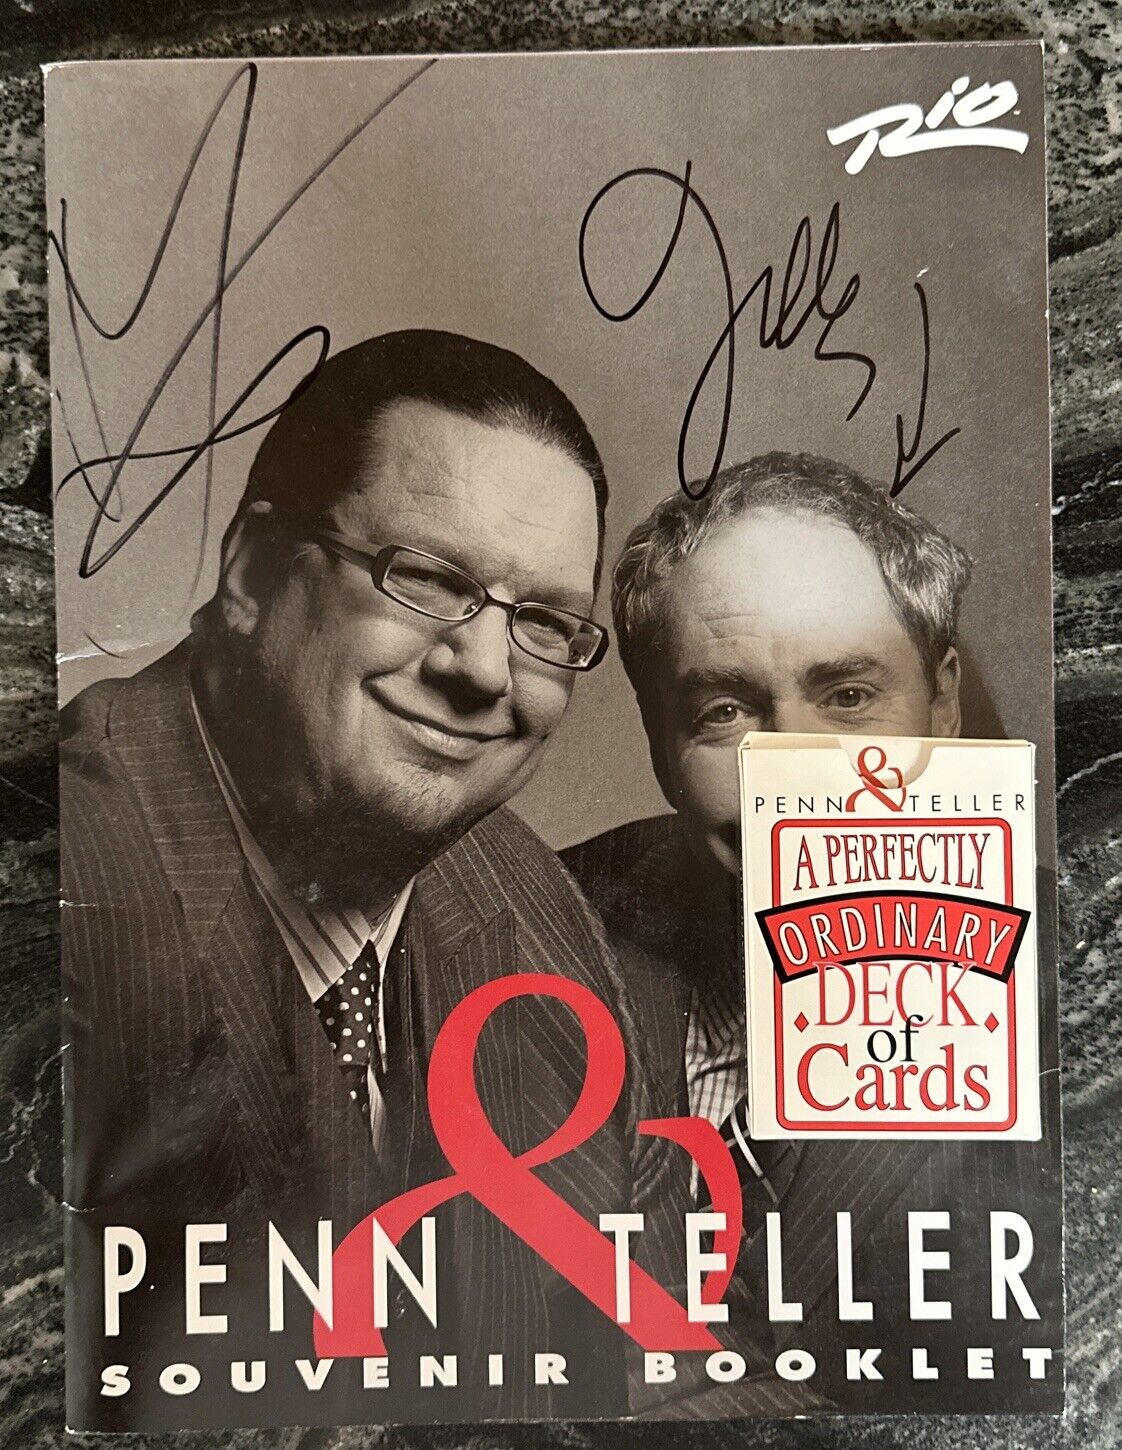 Penn & Teller 2010 Autographed Souvenir Booklet w/ Deck of Magic Cards